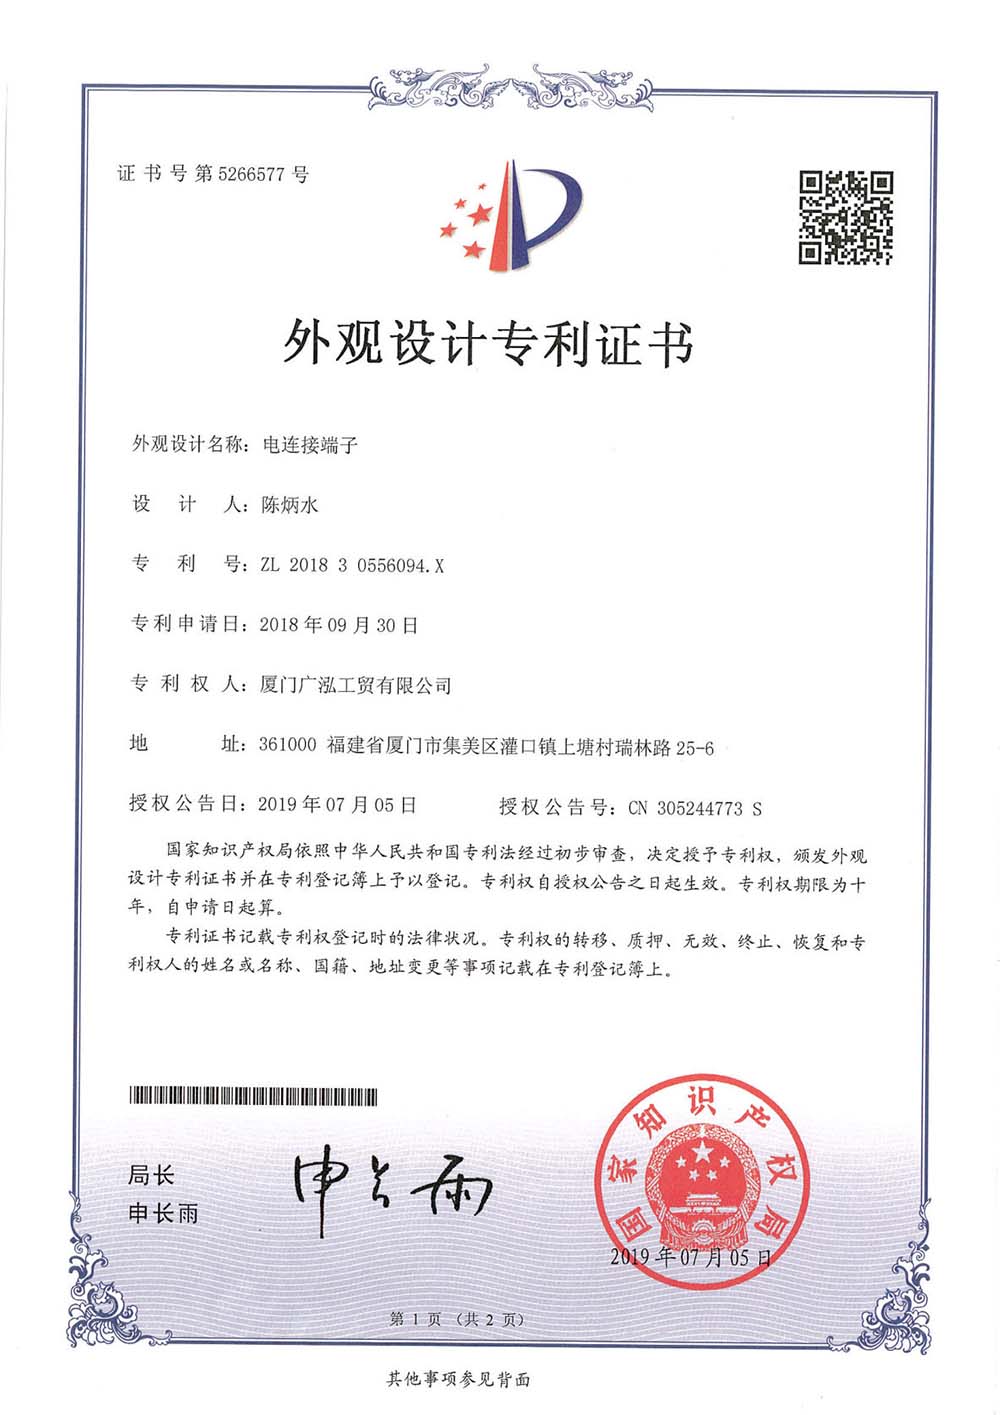 China Elektrische Anschlussklemme 201830556094.X Aussehen Design Patent